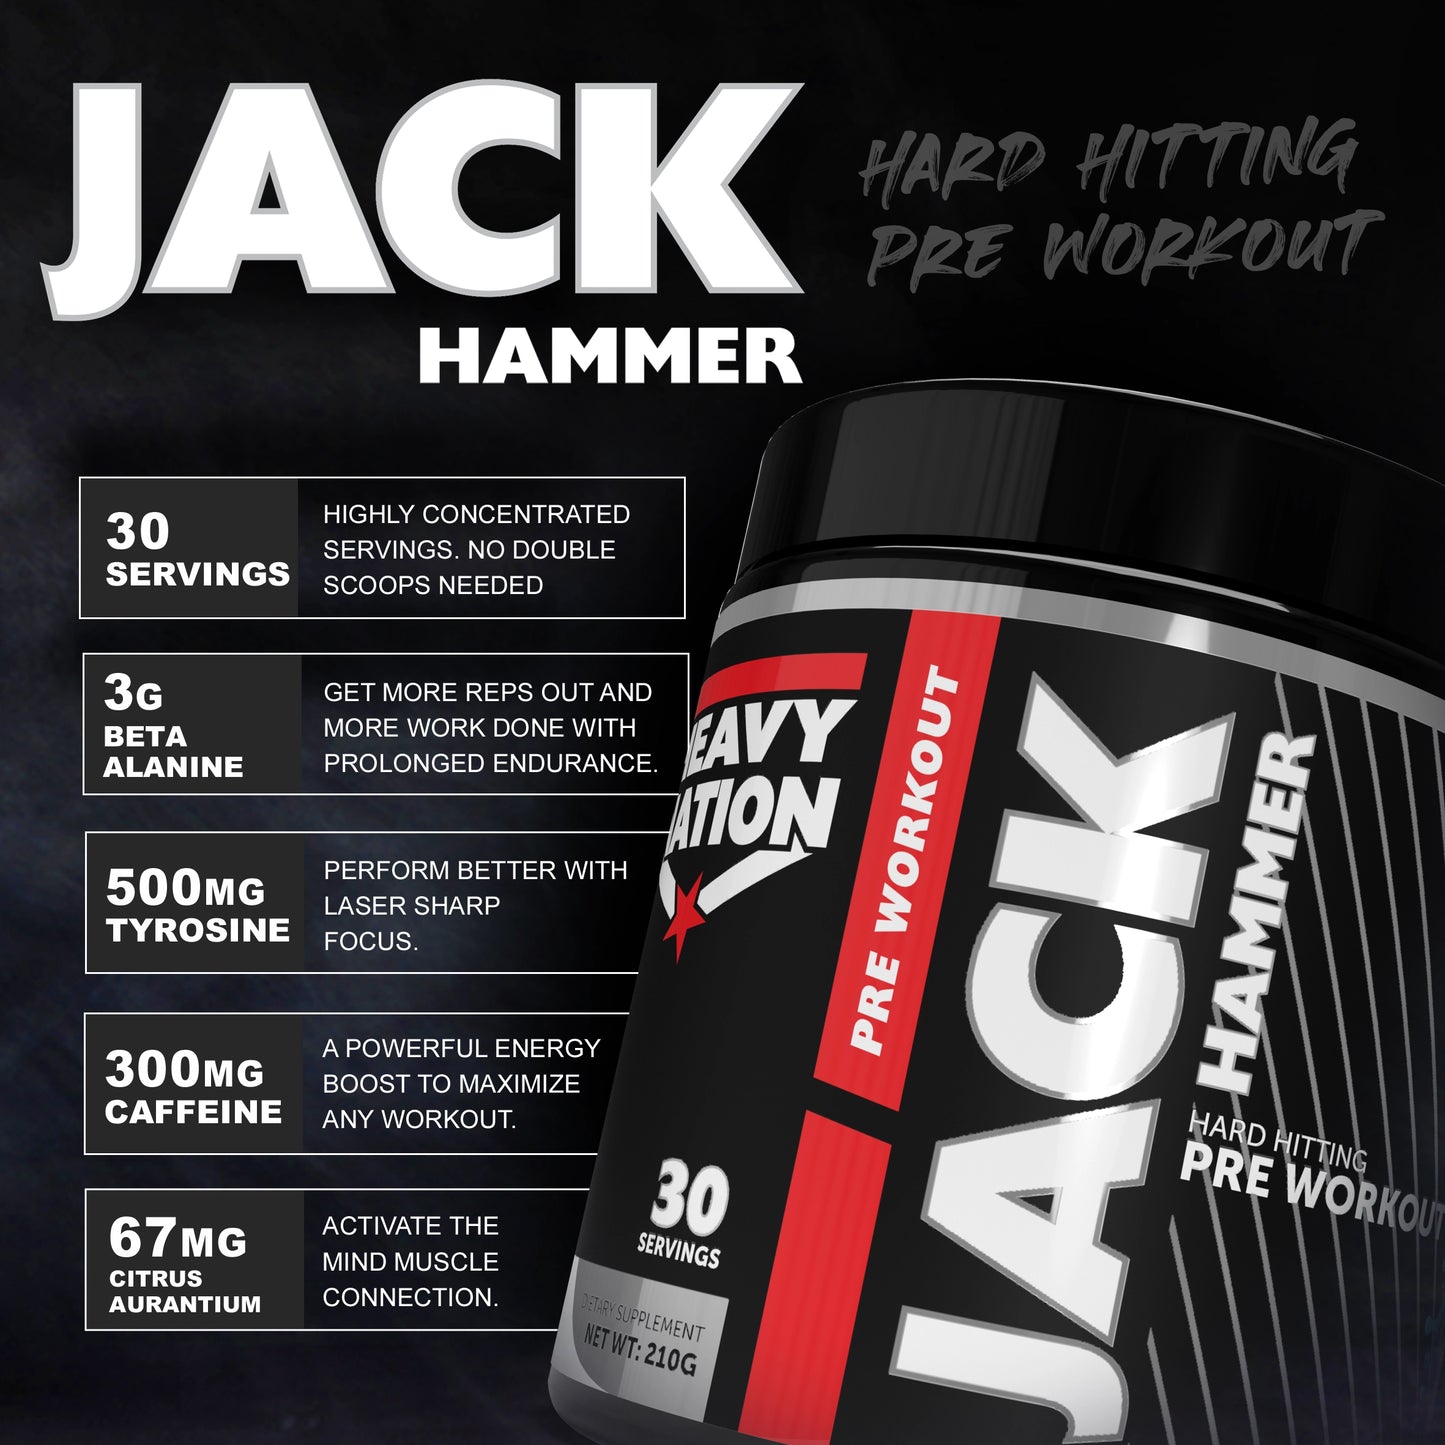 JACK HAMMER Pre Workout